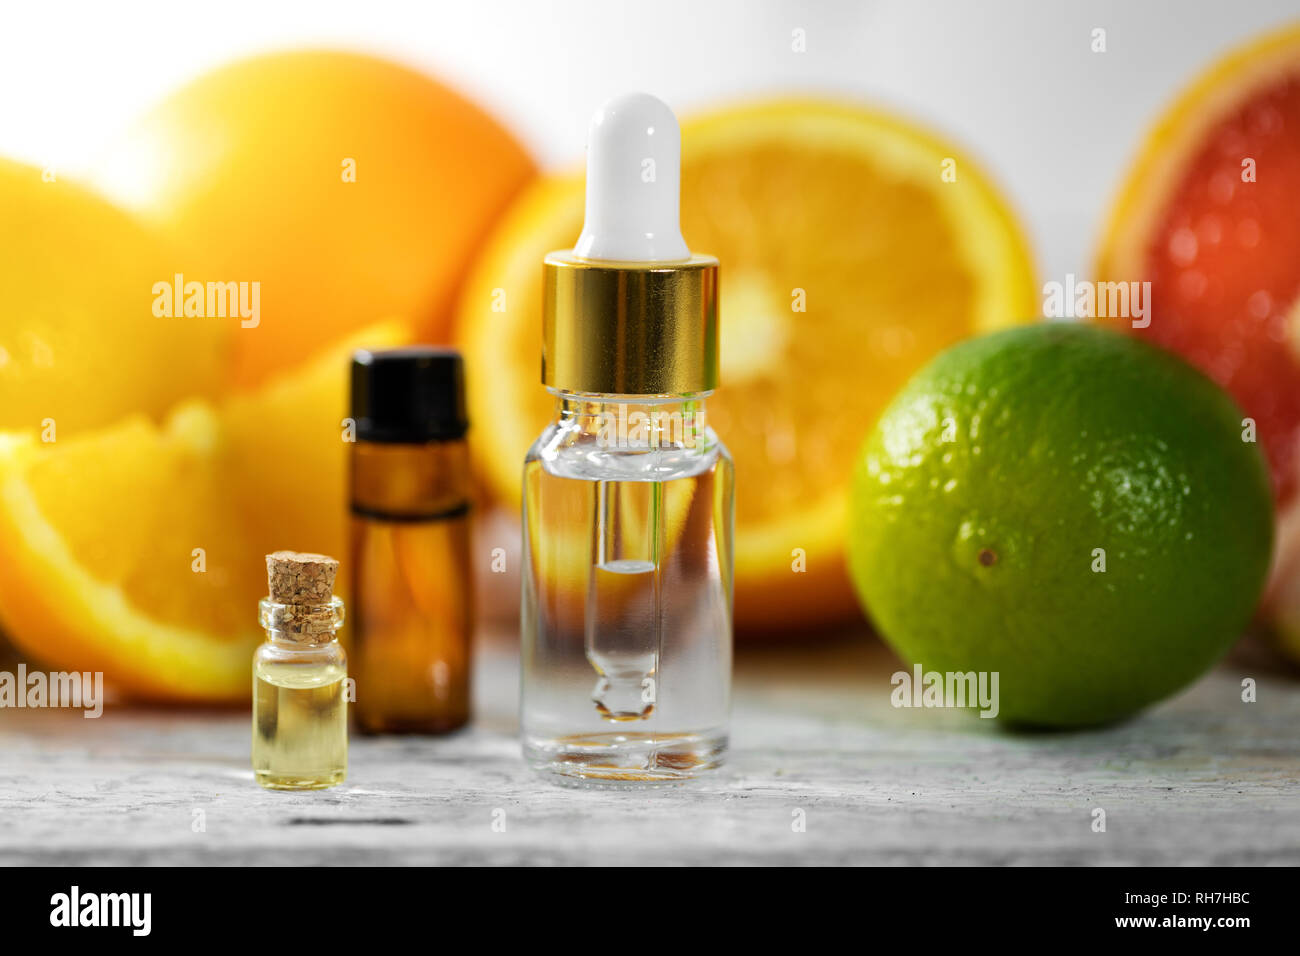 Organischen ätherischen Öl Flaschen und Früchte auf hölzernen Tisch Stockfoto